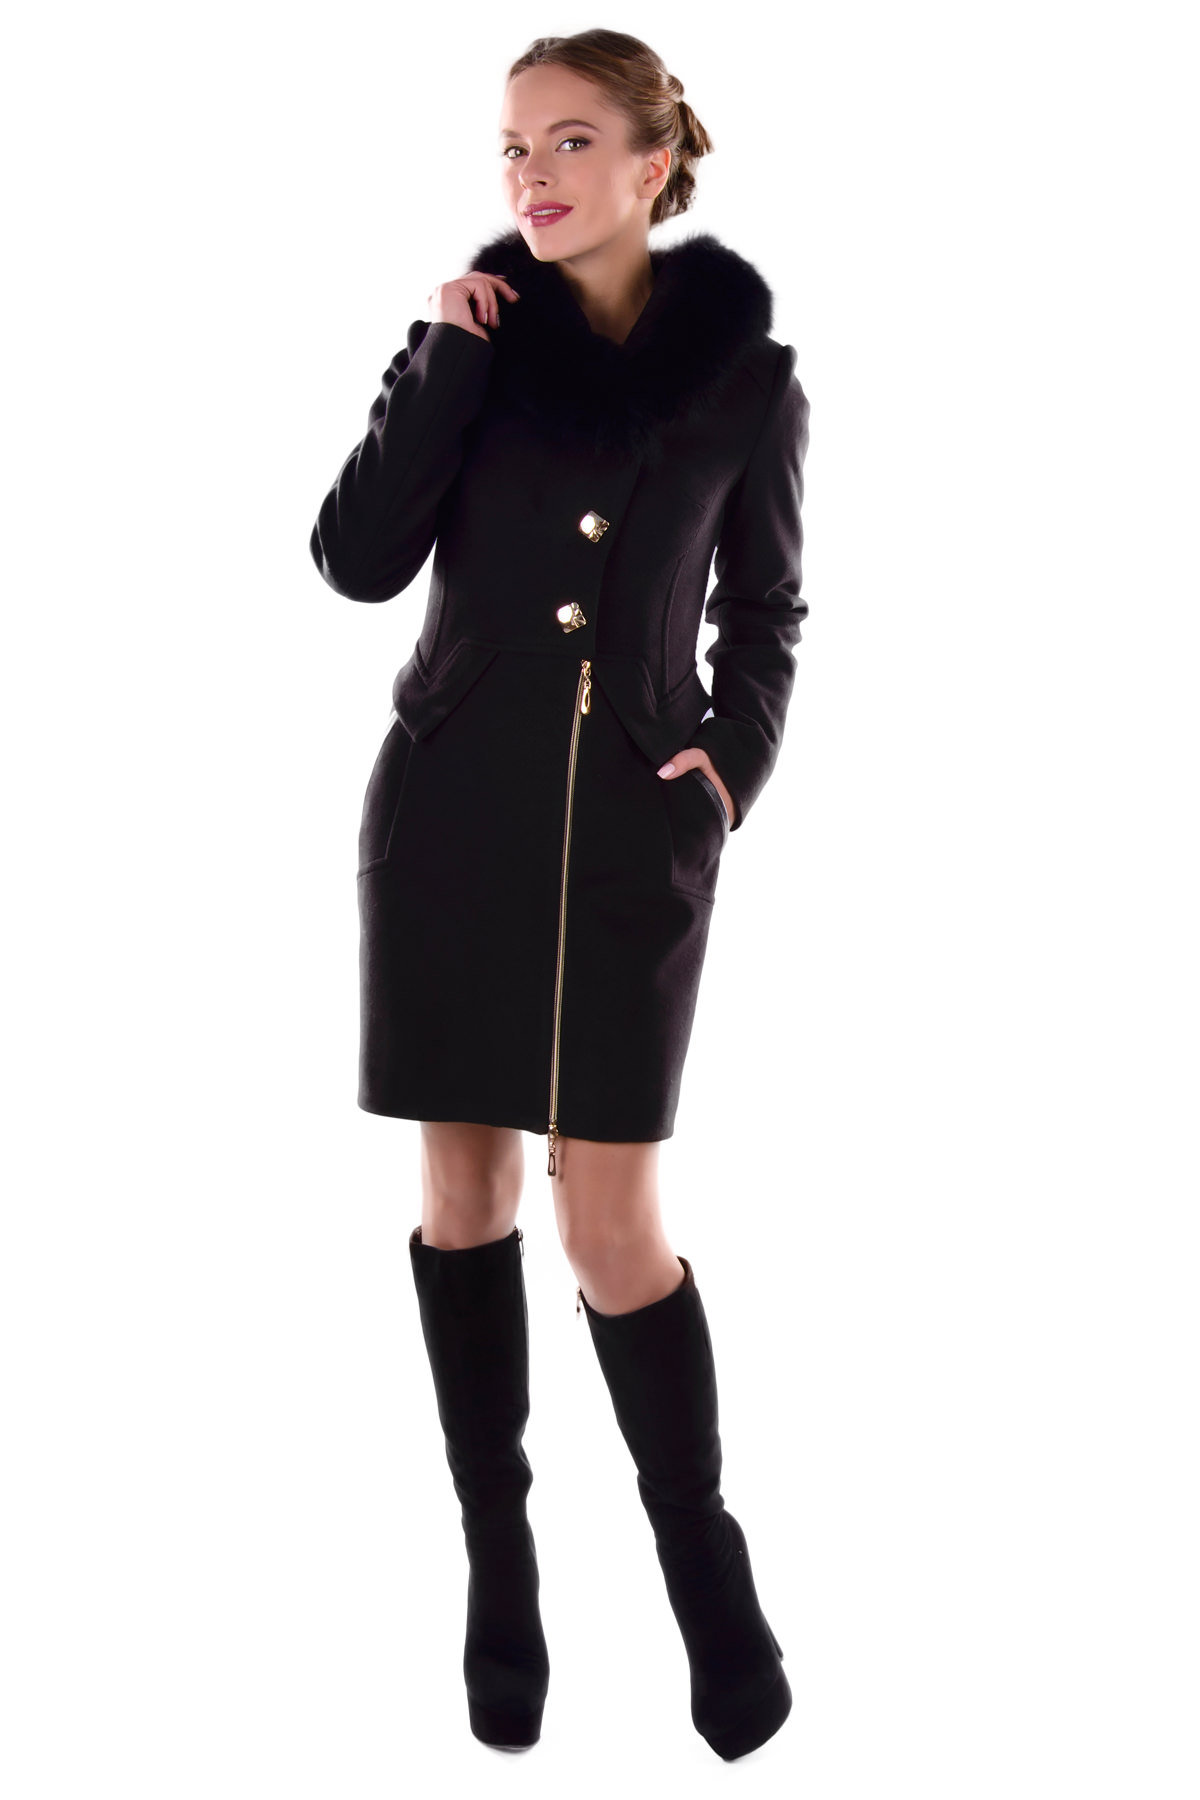 Купить оптом женское пальто недорого Пальто Глазго песец зима турция элит